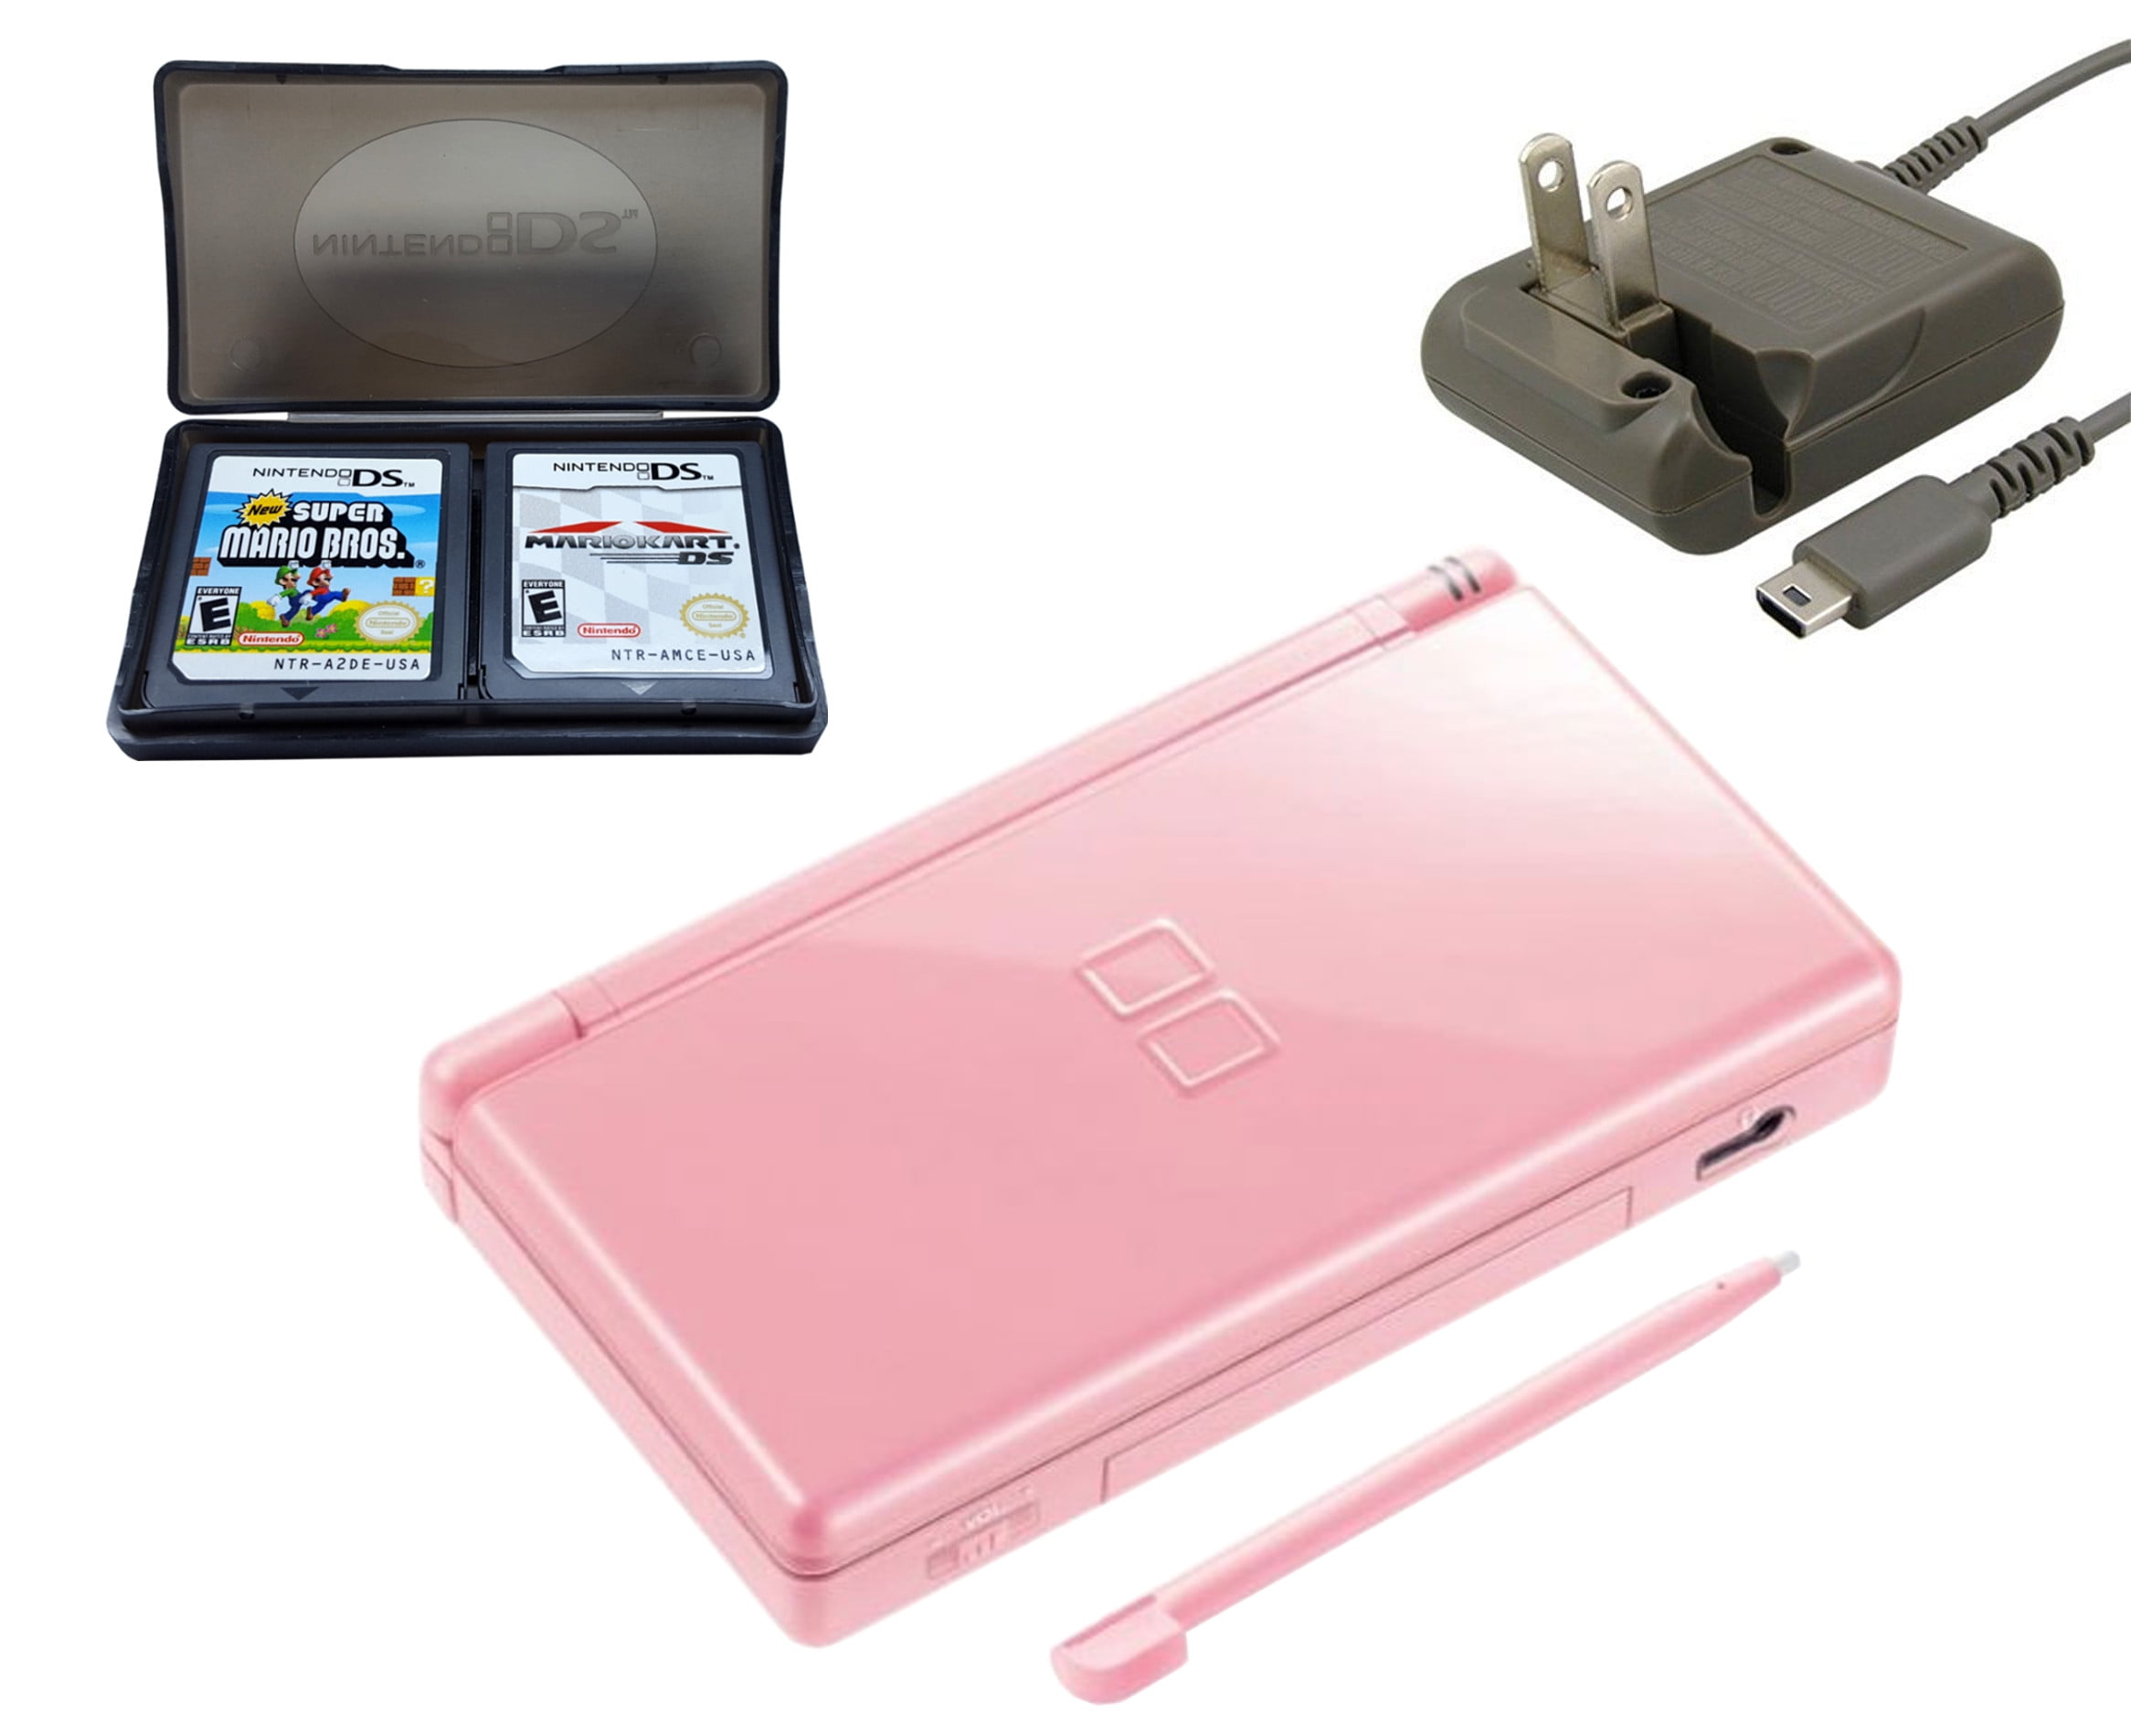 kæde Gør det ikke Sinewi Restored Nintendo DS Lite Coral Pink with Super Mario Bros and Mario Kart  Games (Refurbished) - Walmart.com